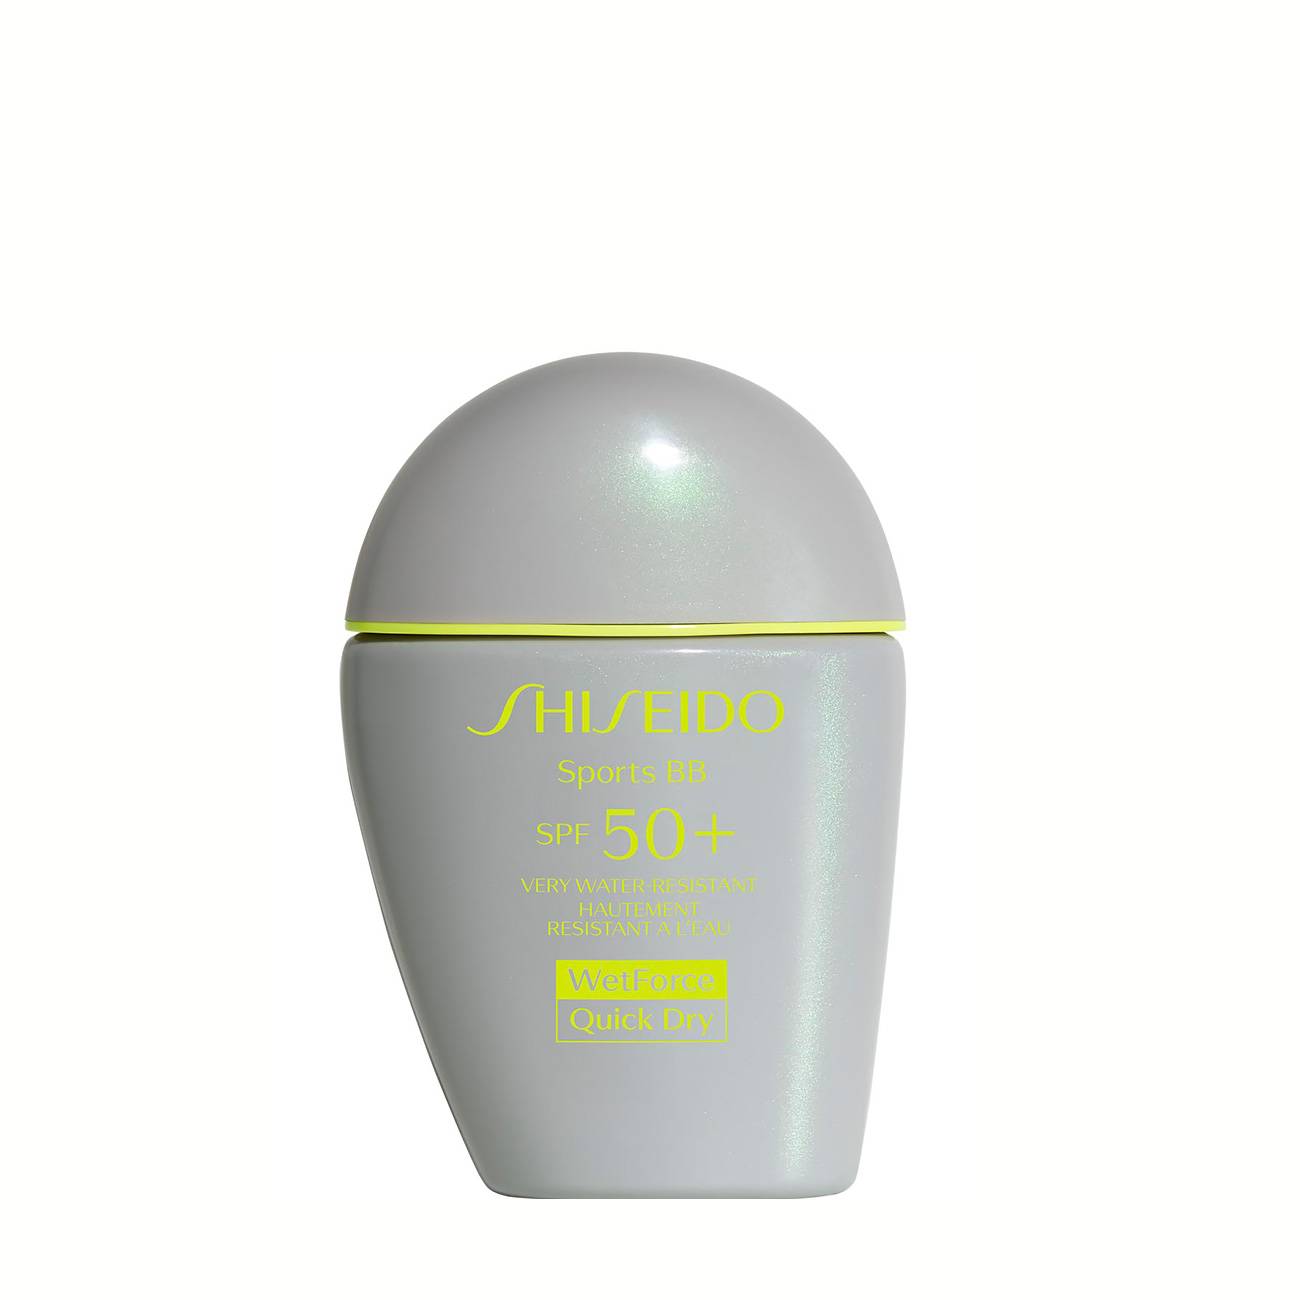 Lotiune pentru plaja Shiseido GLOBAL SUNCARE SPORTS BB LIGHT 30ml cu comanda online